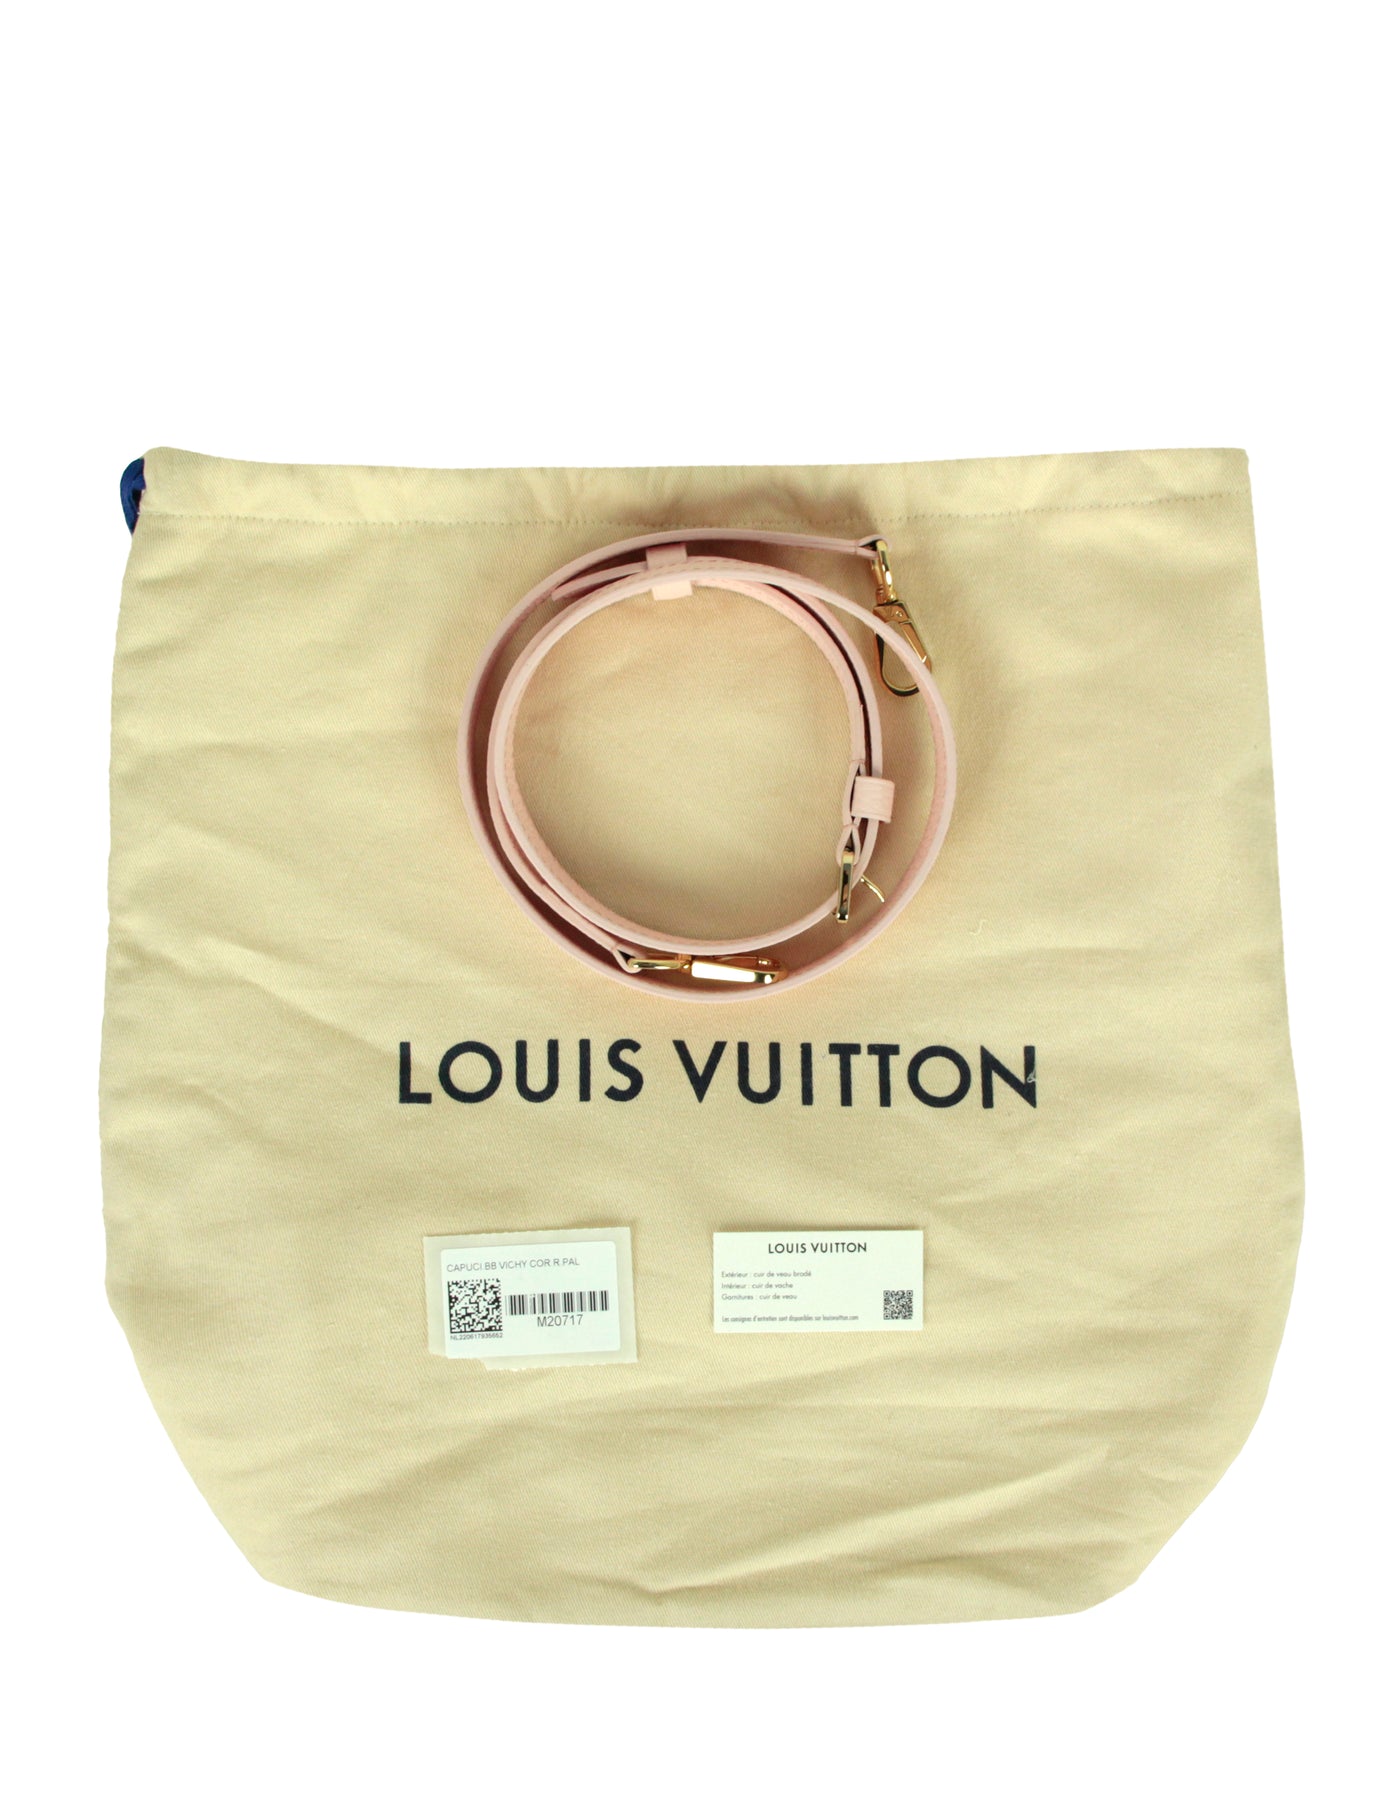 LOUIS VUITTON Taurillon Scrunchie Capucines BB Bubble Gum Pink 840955